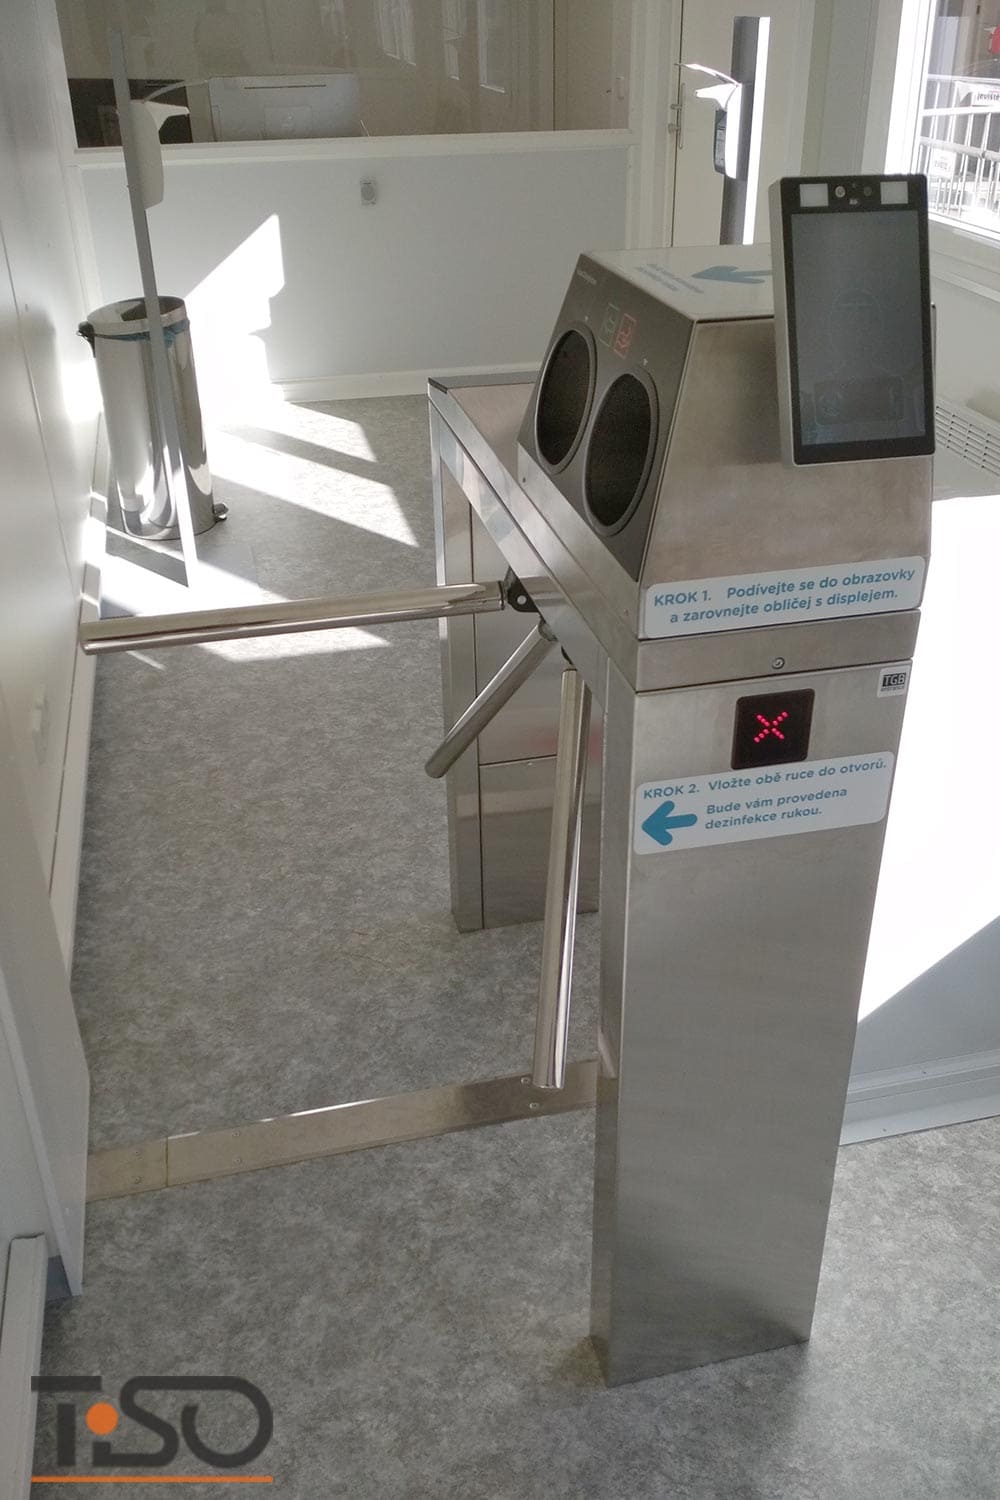 Twix-M és automatikus kézfertőtlenítő rendszer, Horovice kórház, Csehország